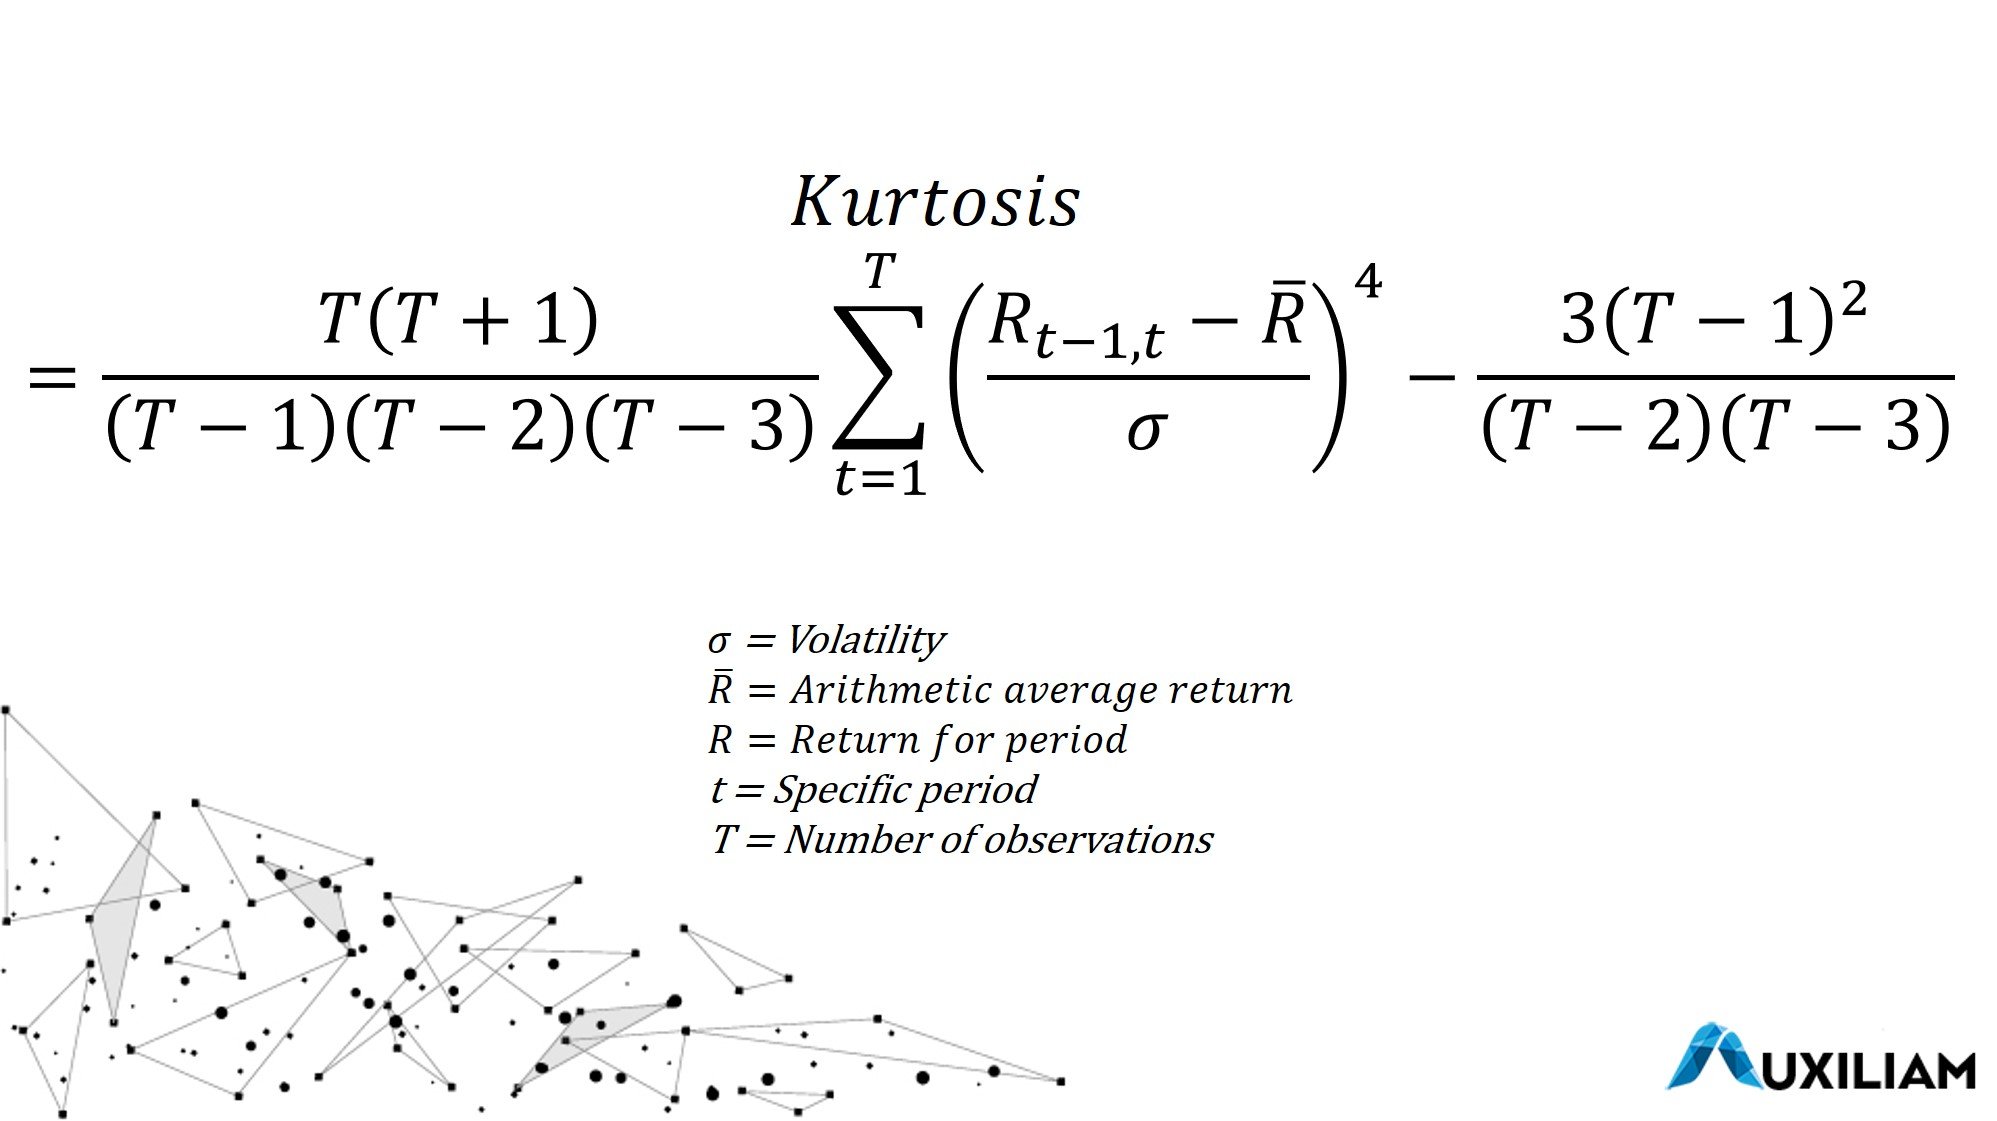 Formula for calculating Kurtosis